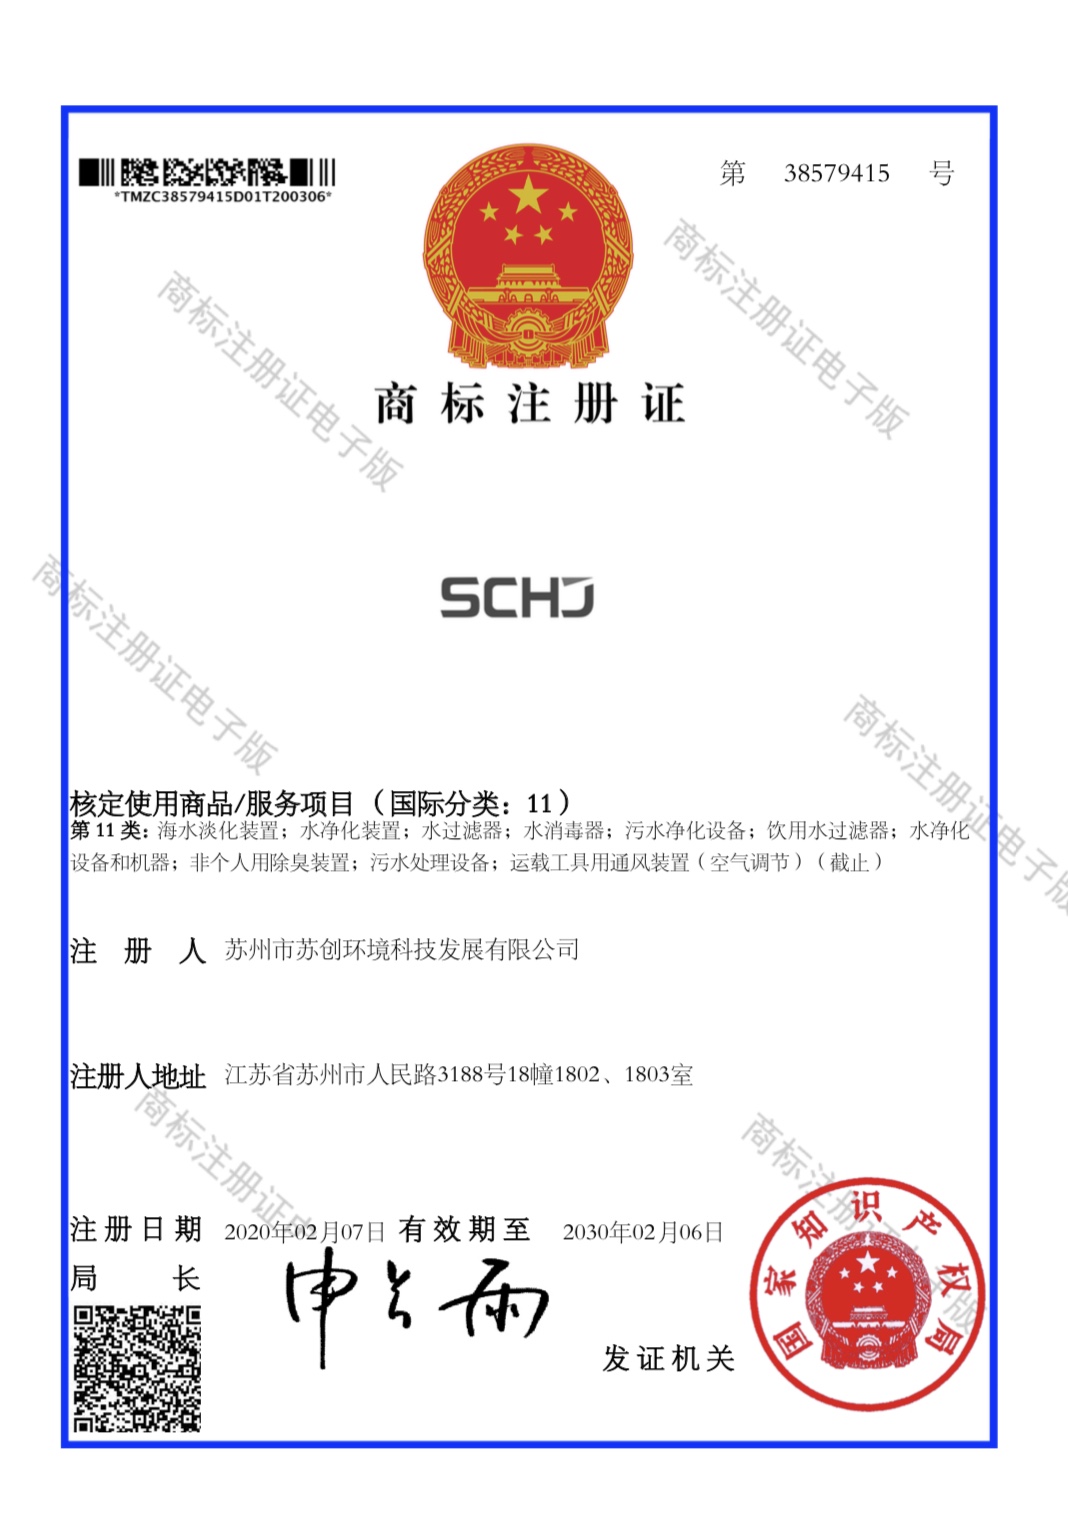 商标注册证书 11类-“SCHJ”38579415.jpg